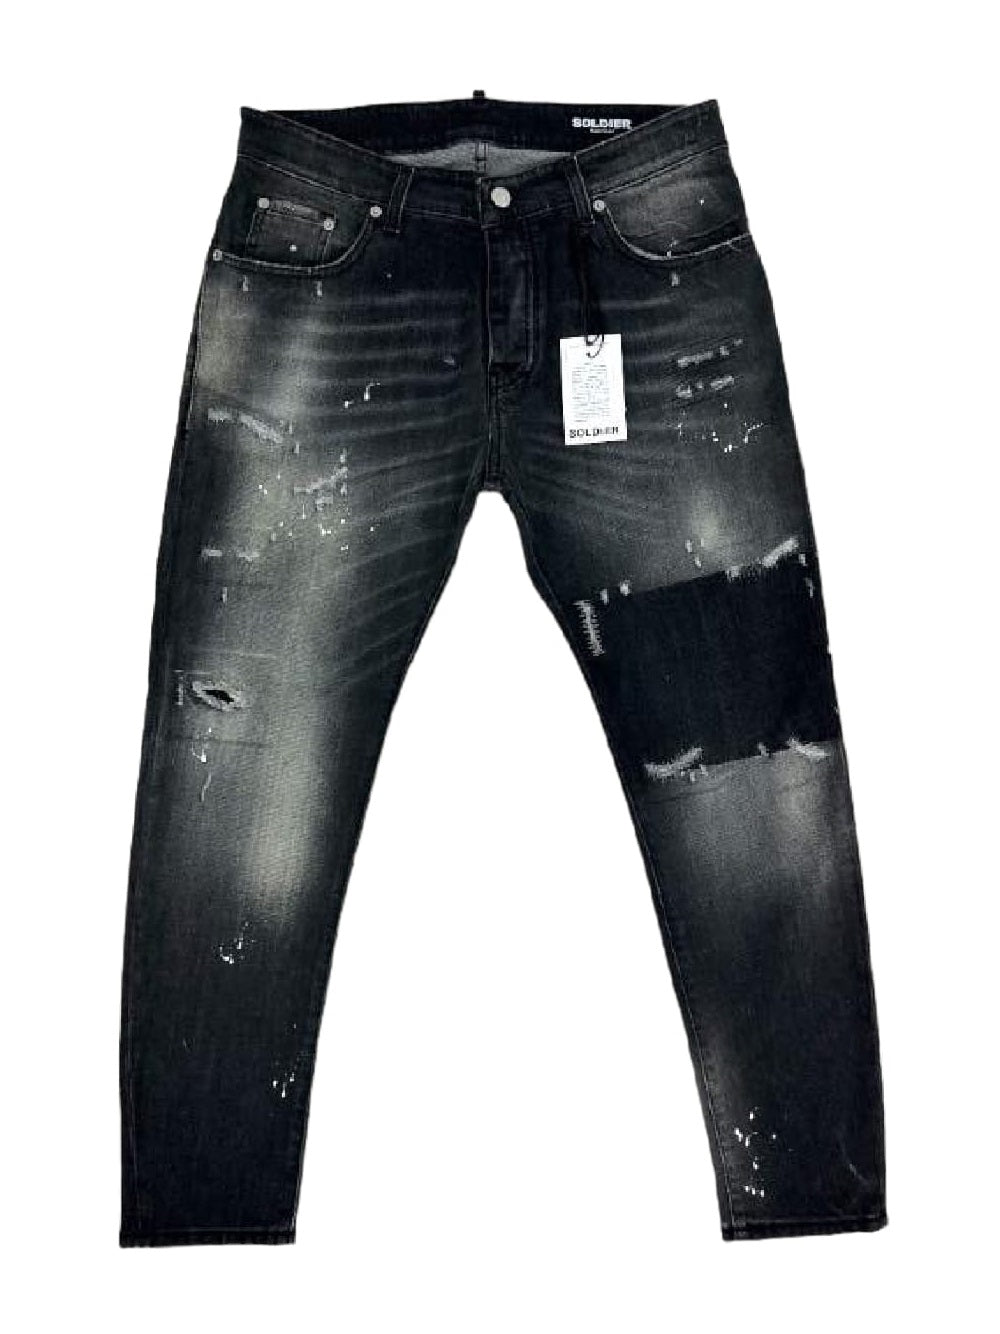 Jeans Soldier modello GIG 215N con schizzi di vernice e strappati sfrangiato